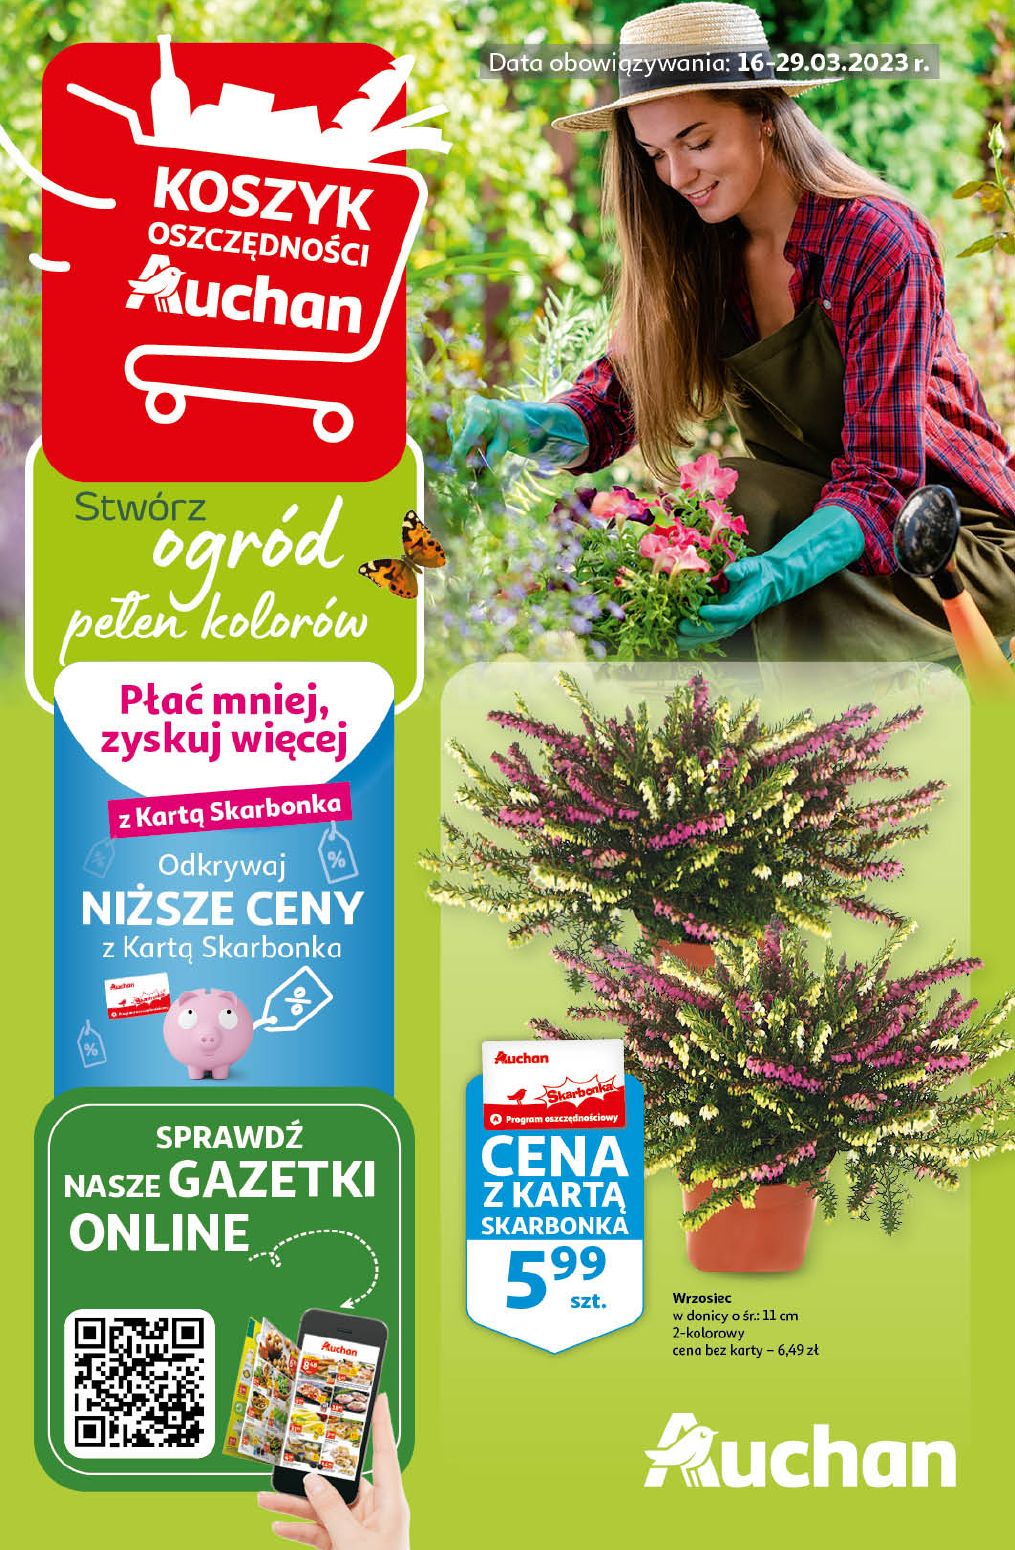 акційний каталог Auchan – Ogród pełen kolorów - Сторінка {{page}}